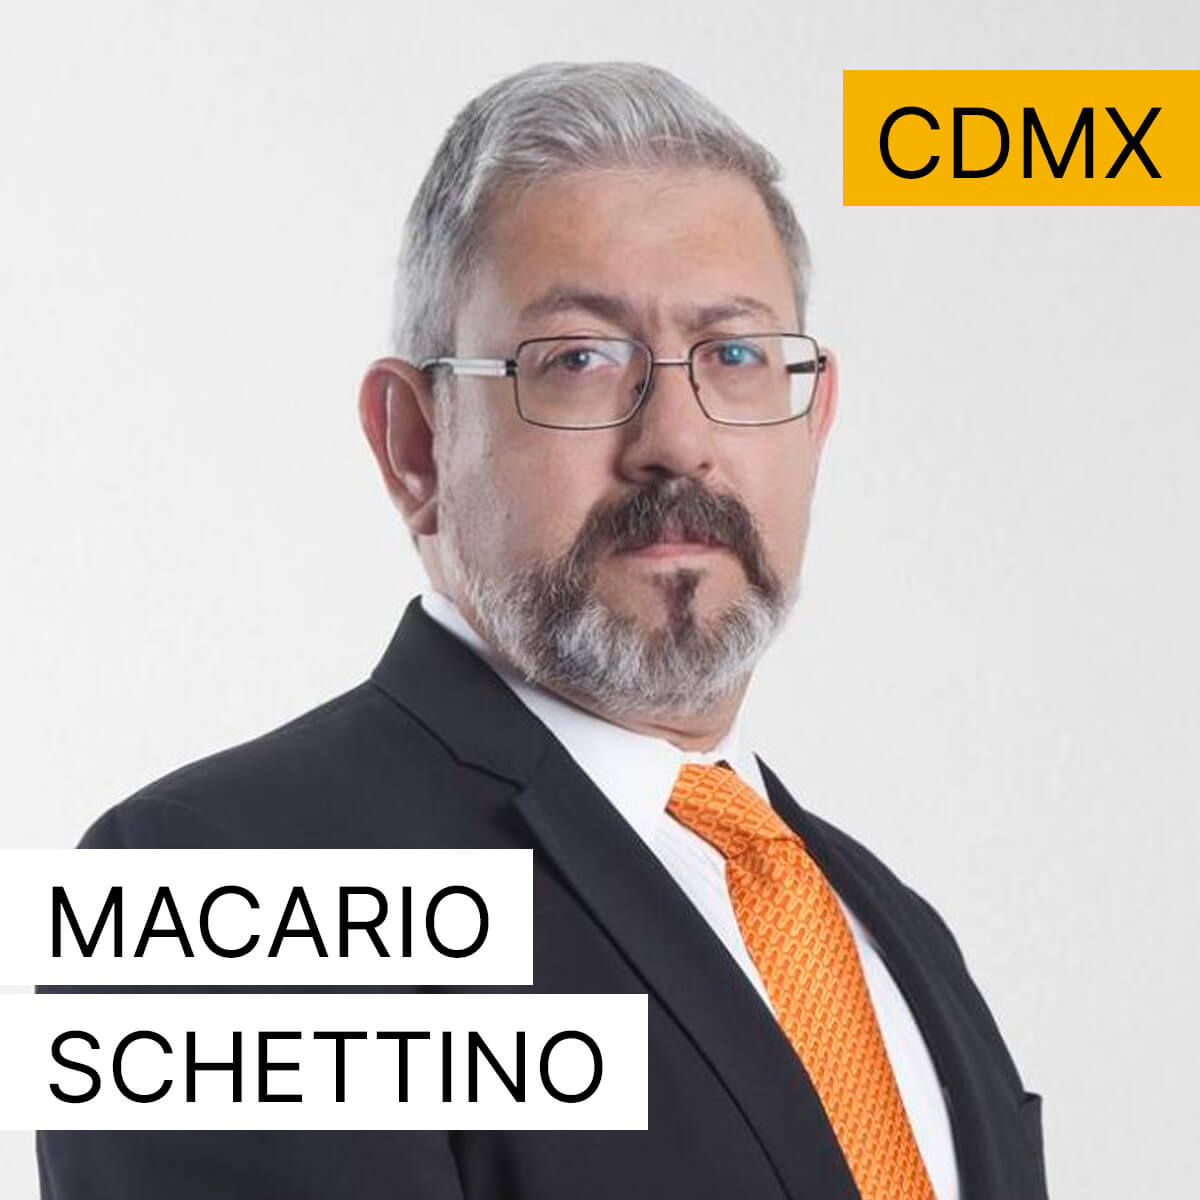 Macario Schettino - Ciudad de México